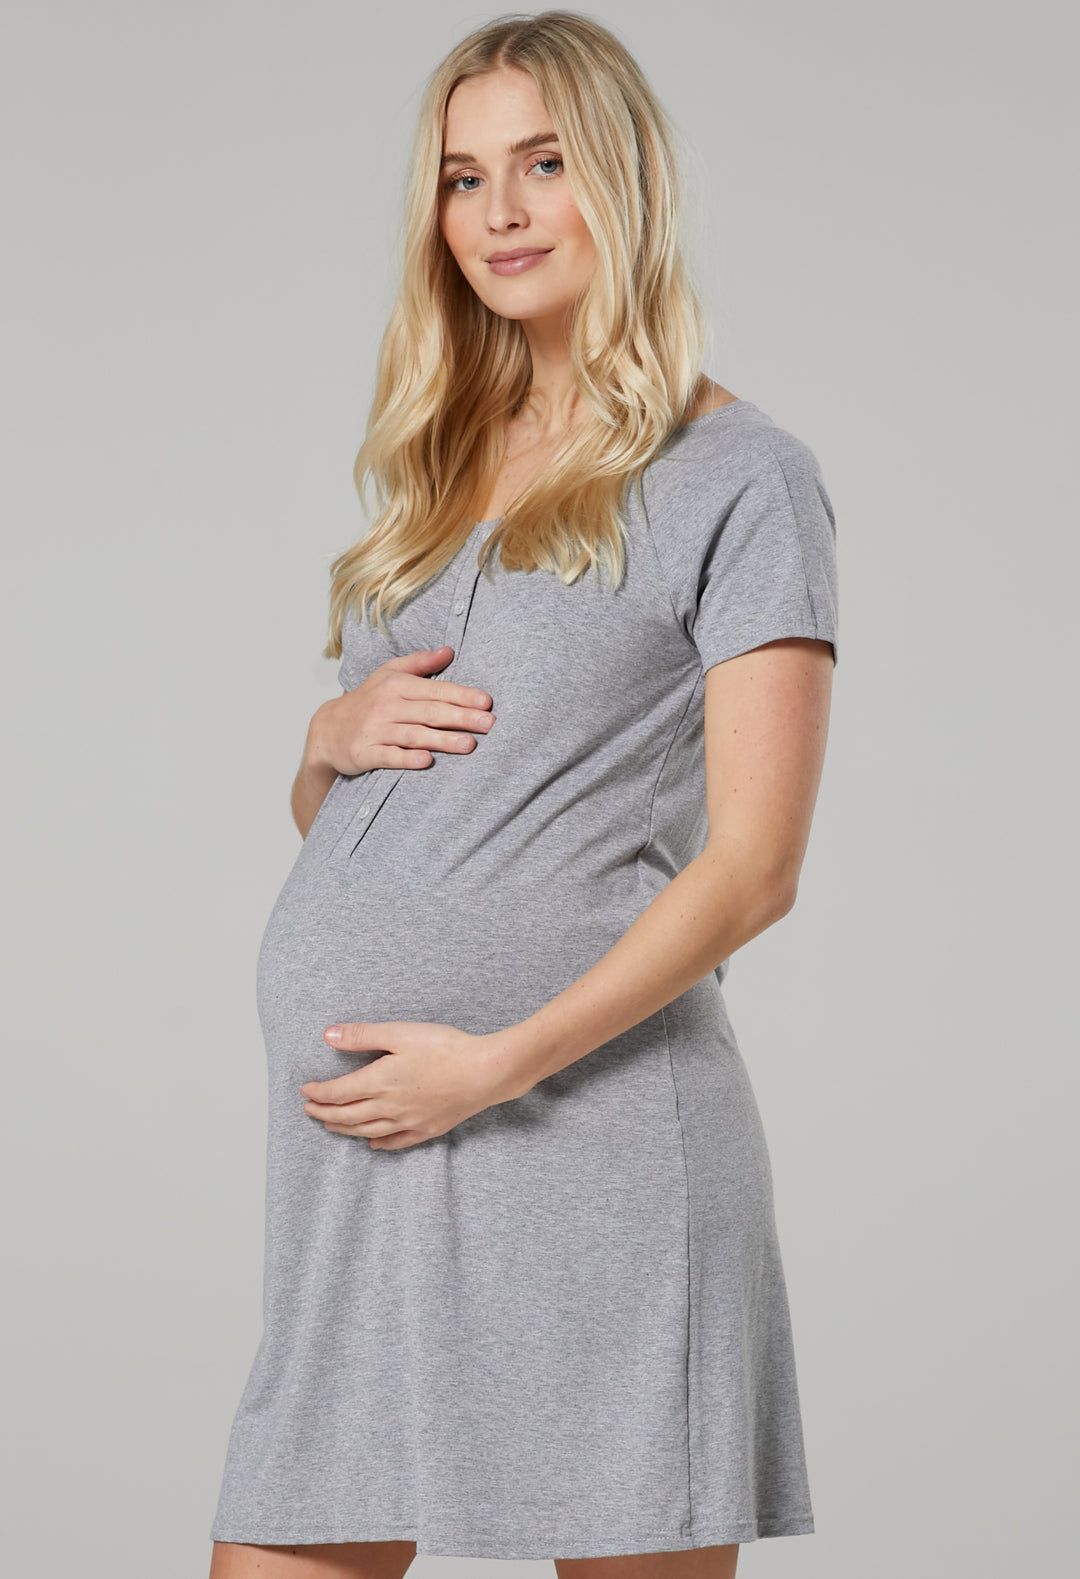 Ciążowy Zestaw: Koszula do Porodu, Szlafrok i Kocyk dla Dziecka